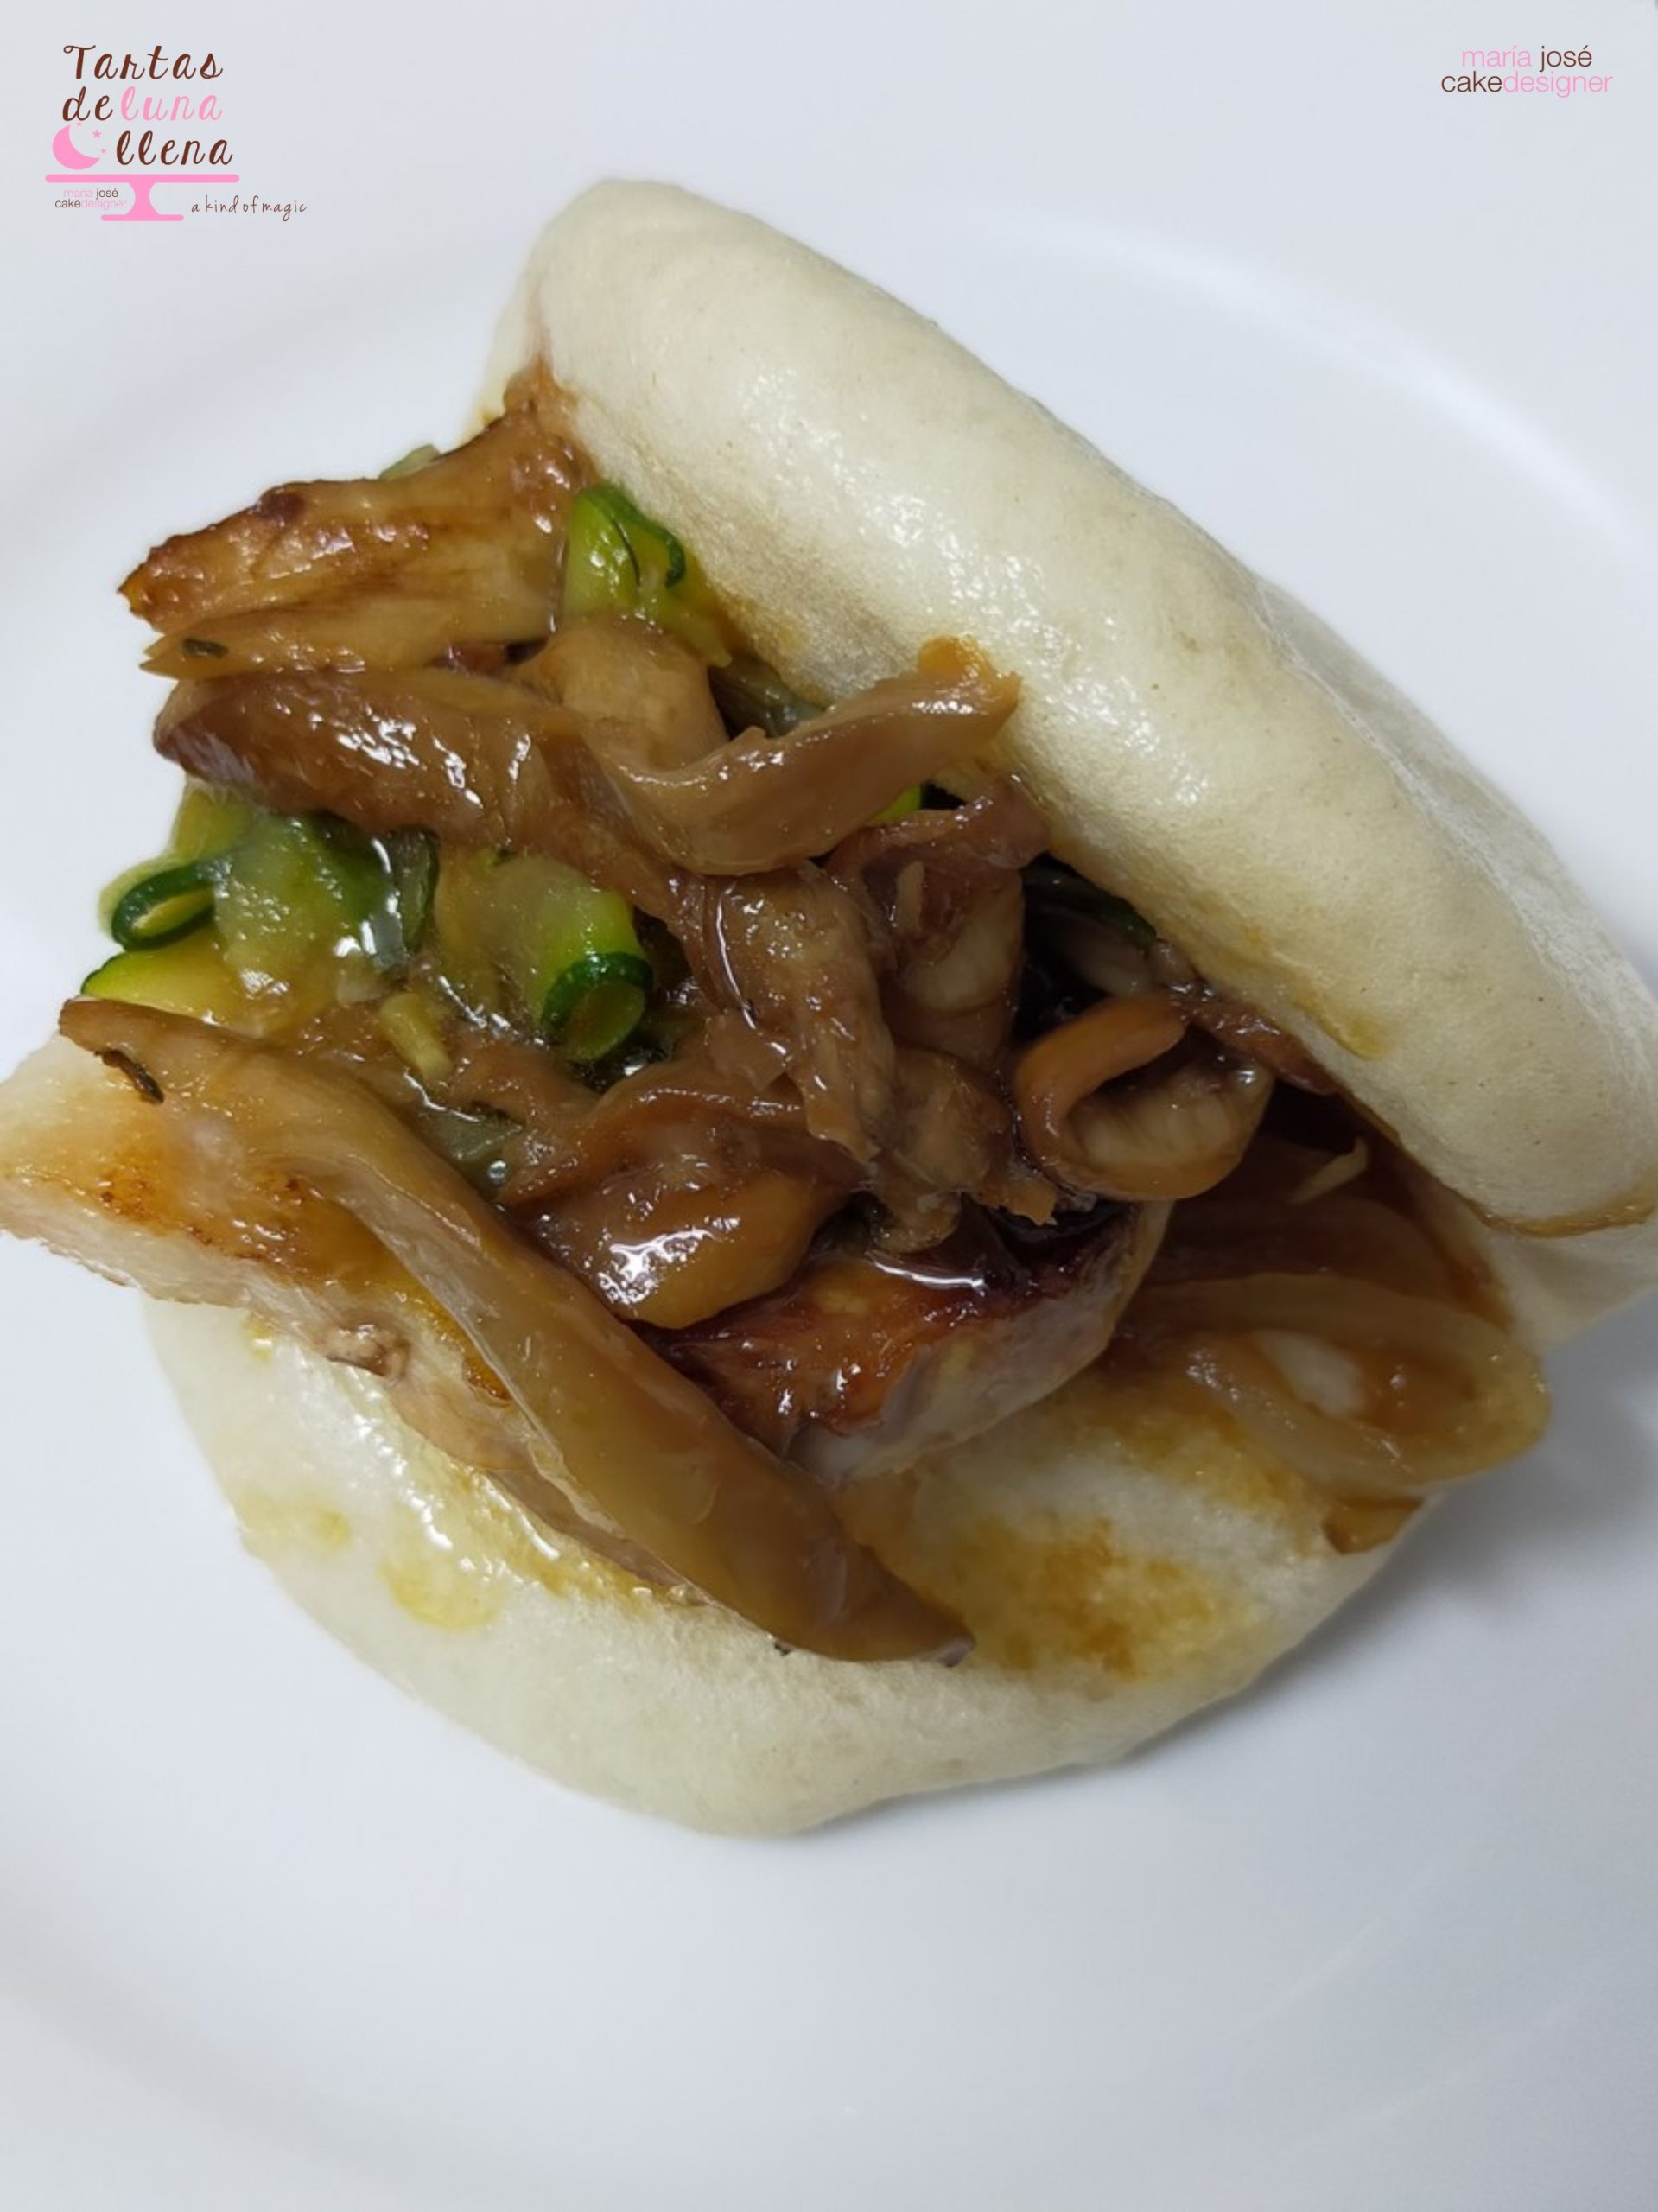 Receta de pan bao casero al vapor, unos panecillos asiáticos deliciosos -  Recetas de ¡Escándalo!